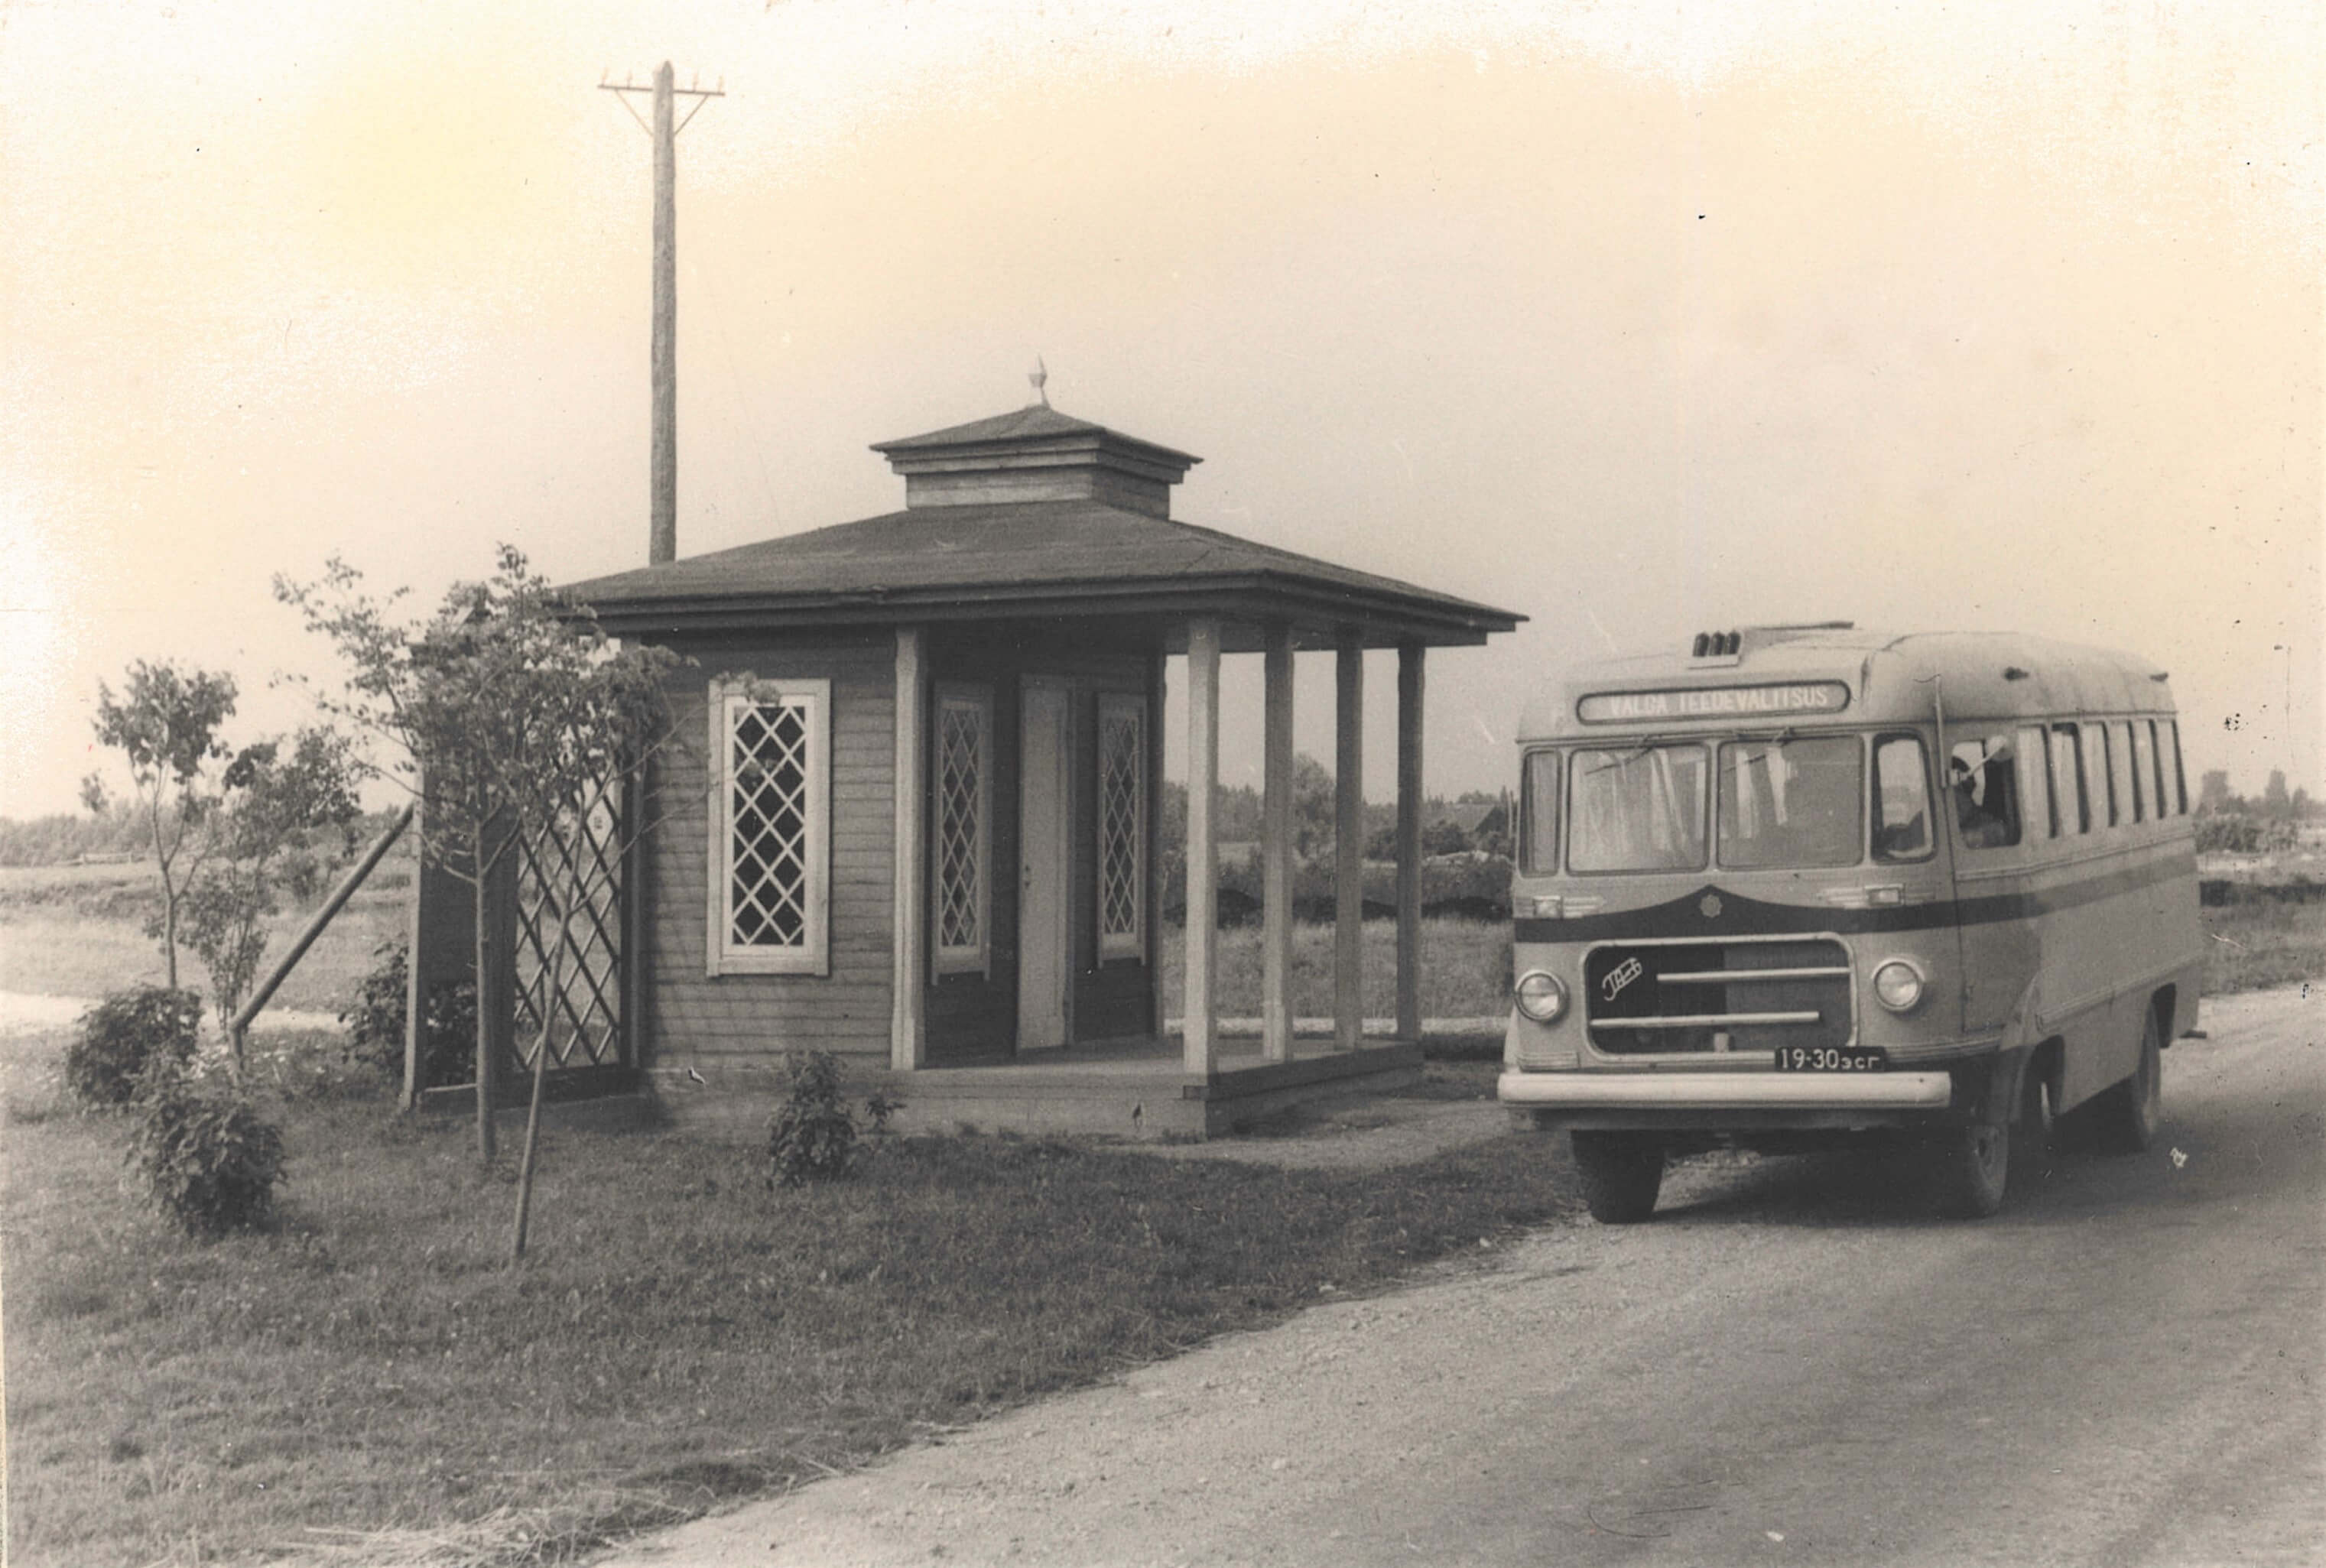 Väikesed puust bussid väikesest puust linnast. Tartu Autoremonttehases GAZ-51 baasil konstrueeritud autobusside TA-6 tootmine algas 1955. aastal. See 25-istmeline buss täitis puudujäägi tollaste maakonnakeskuste linna- ja linnalähiliinide reisijateveos. Kuigi peatselt võeti Eesti teedel järk-järgult kasutusele Nõukogude Liidu suurte bussitehaste masstoodang, jäi TA-6 ka järgnenud kümnenditel nõutud transpordivahendiks majandite ja asutuste ühissõidukina. Fotol Valga teedevalitsuse buss Jõhvi–Tartu–Valga maa